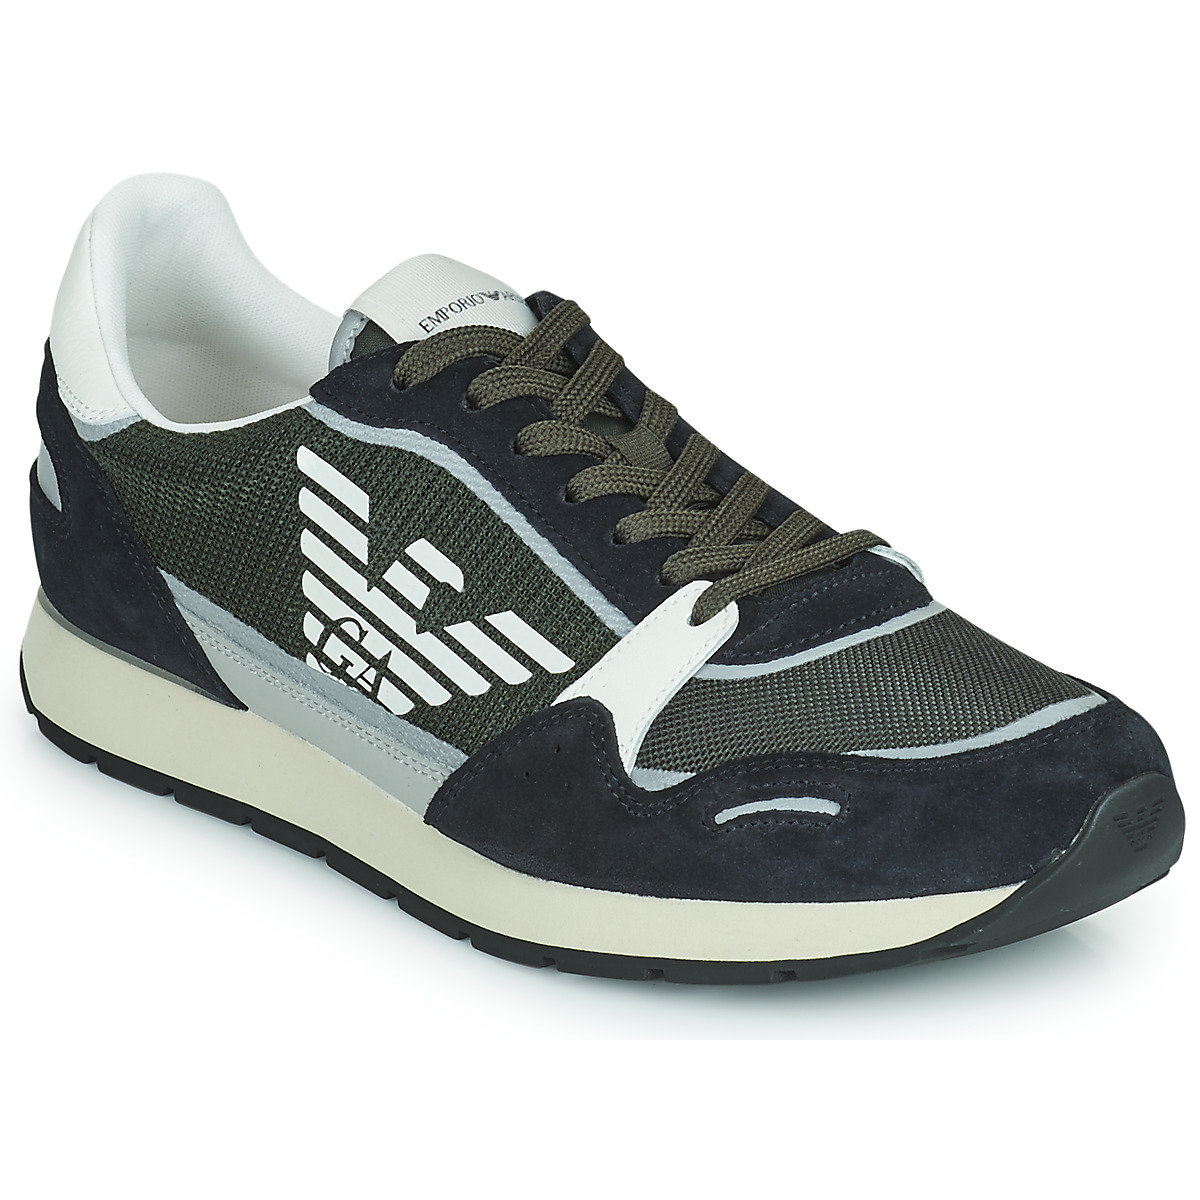 Ontdek Op het randje Tutor Emporio Armani ANIMA Black - Free delivery | Spartoo NET ! - Shoes Low top  trainers Men USD/$160.80